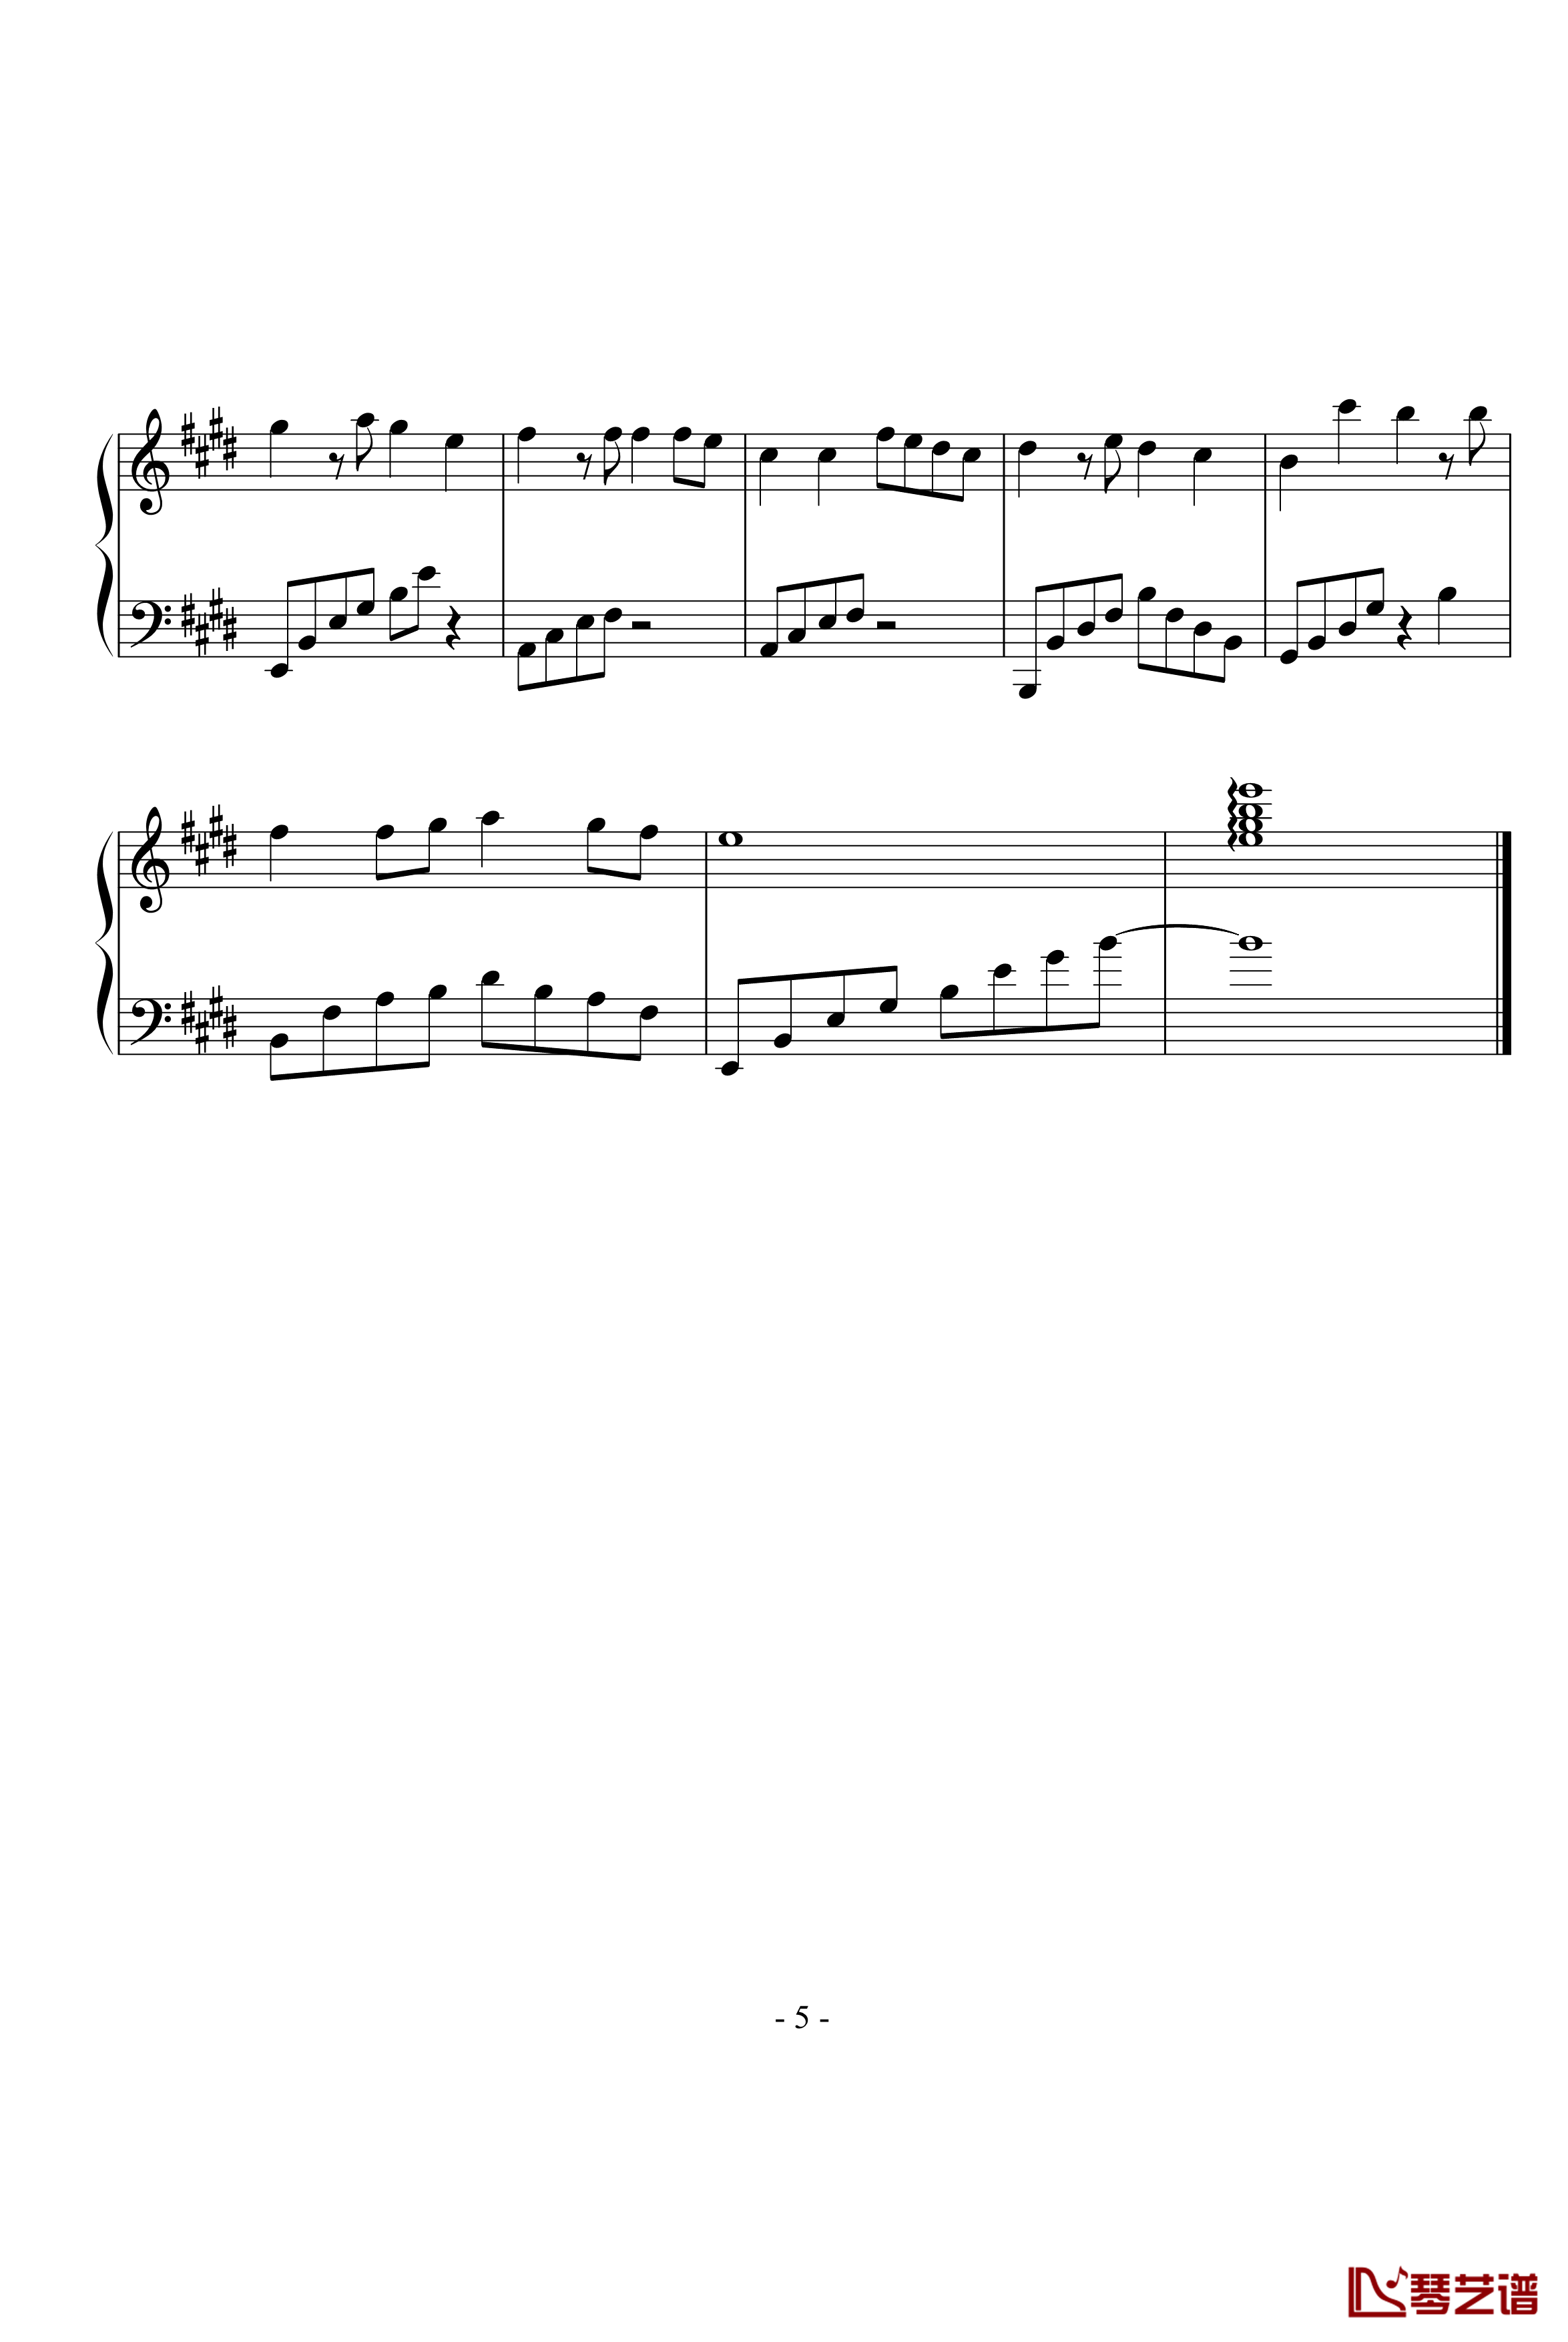 同一首歌钢琴谱-完整版-毛阿敏5